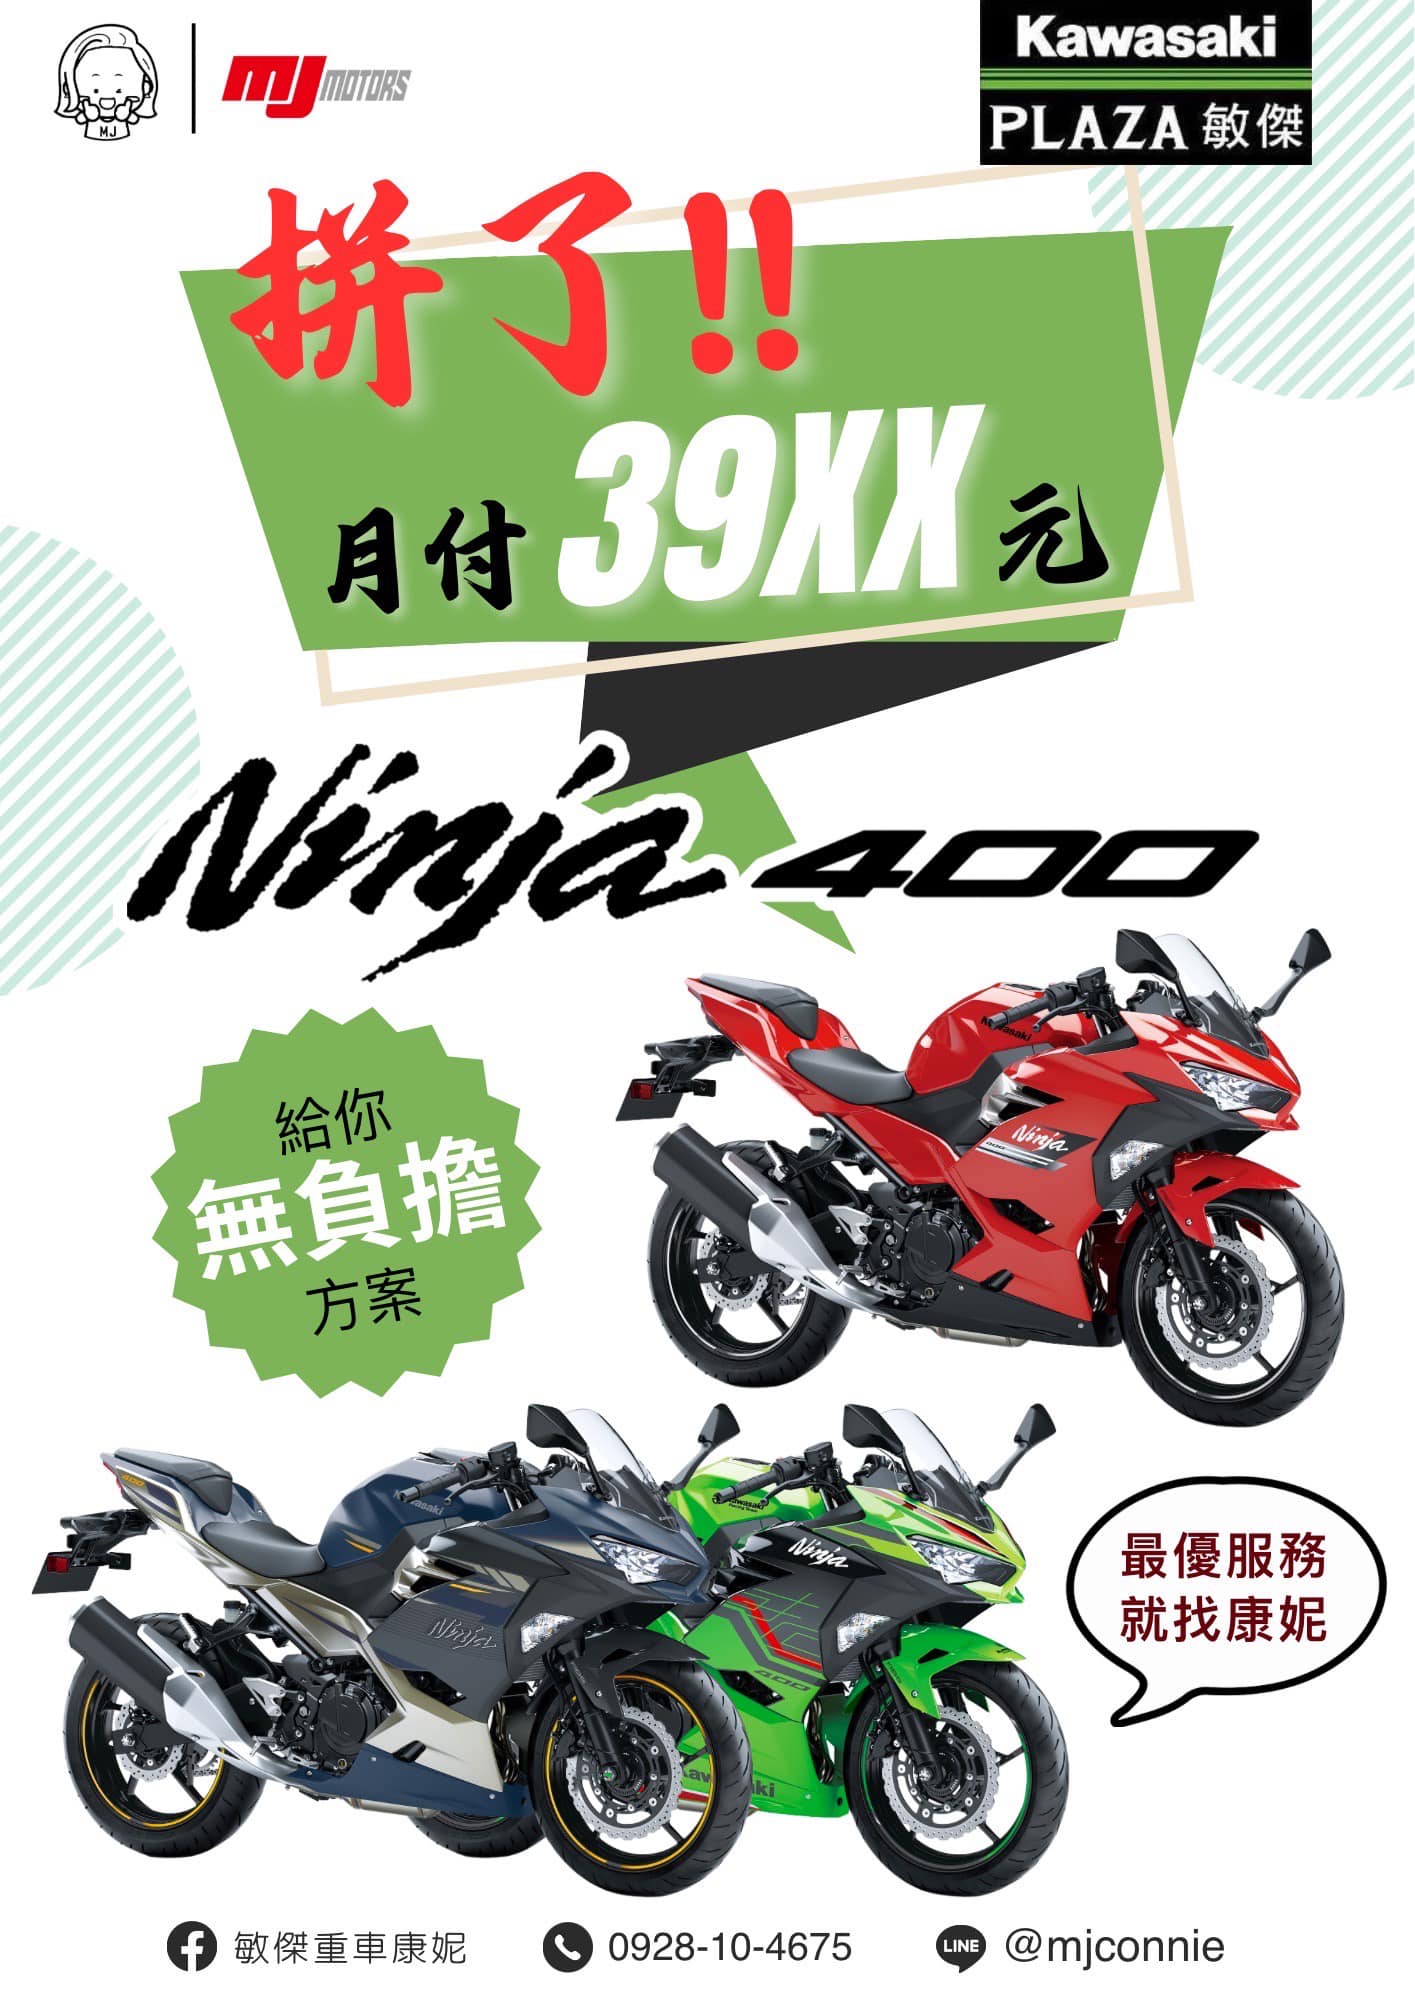 KAWASAKI NINJA400新車出售中 『敏傑康妮』Kawasaki Ninja400 月繳39xx!!! 最後一波好康!! 就是要你繳得無感 | 敏傑車業資深銷售專員 康妮 Connie